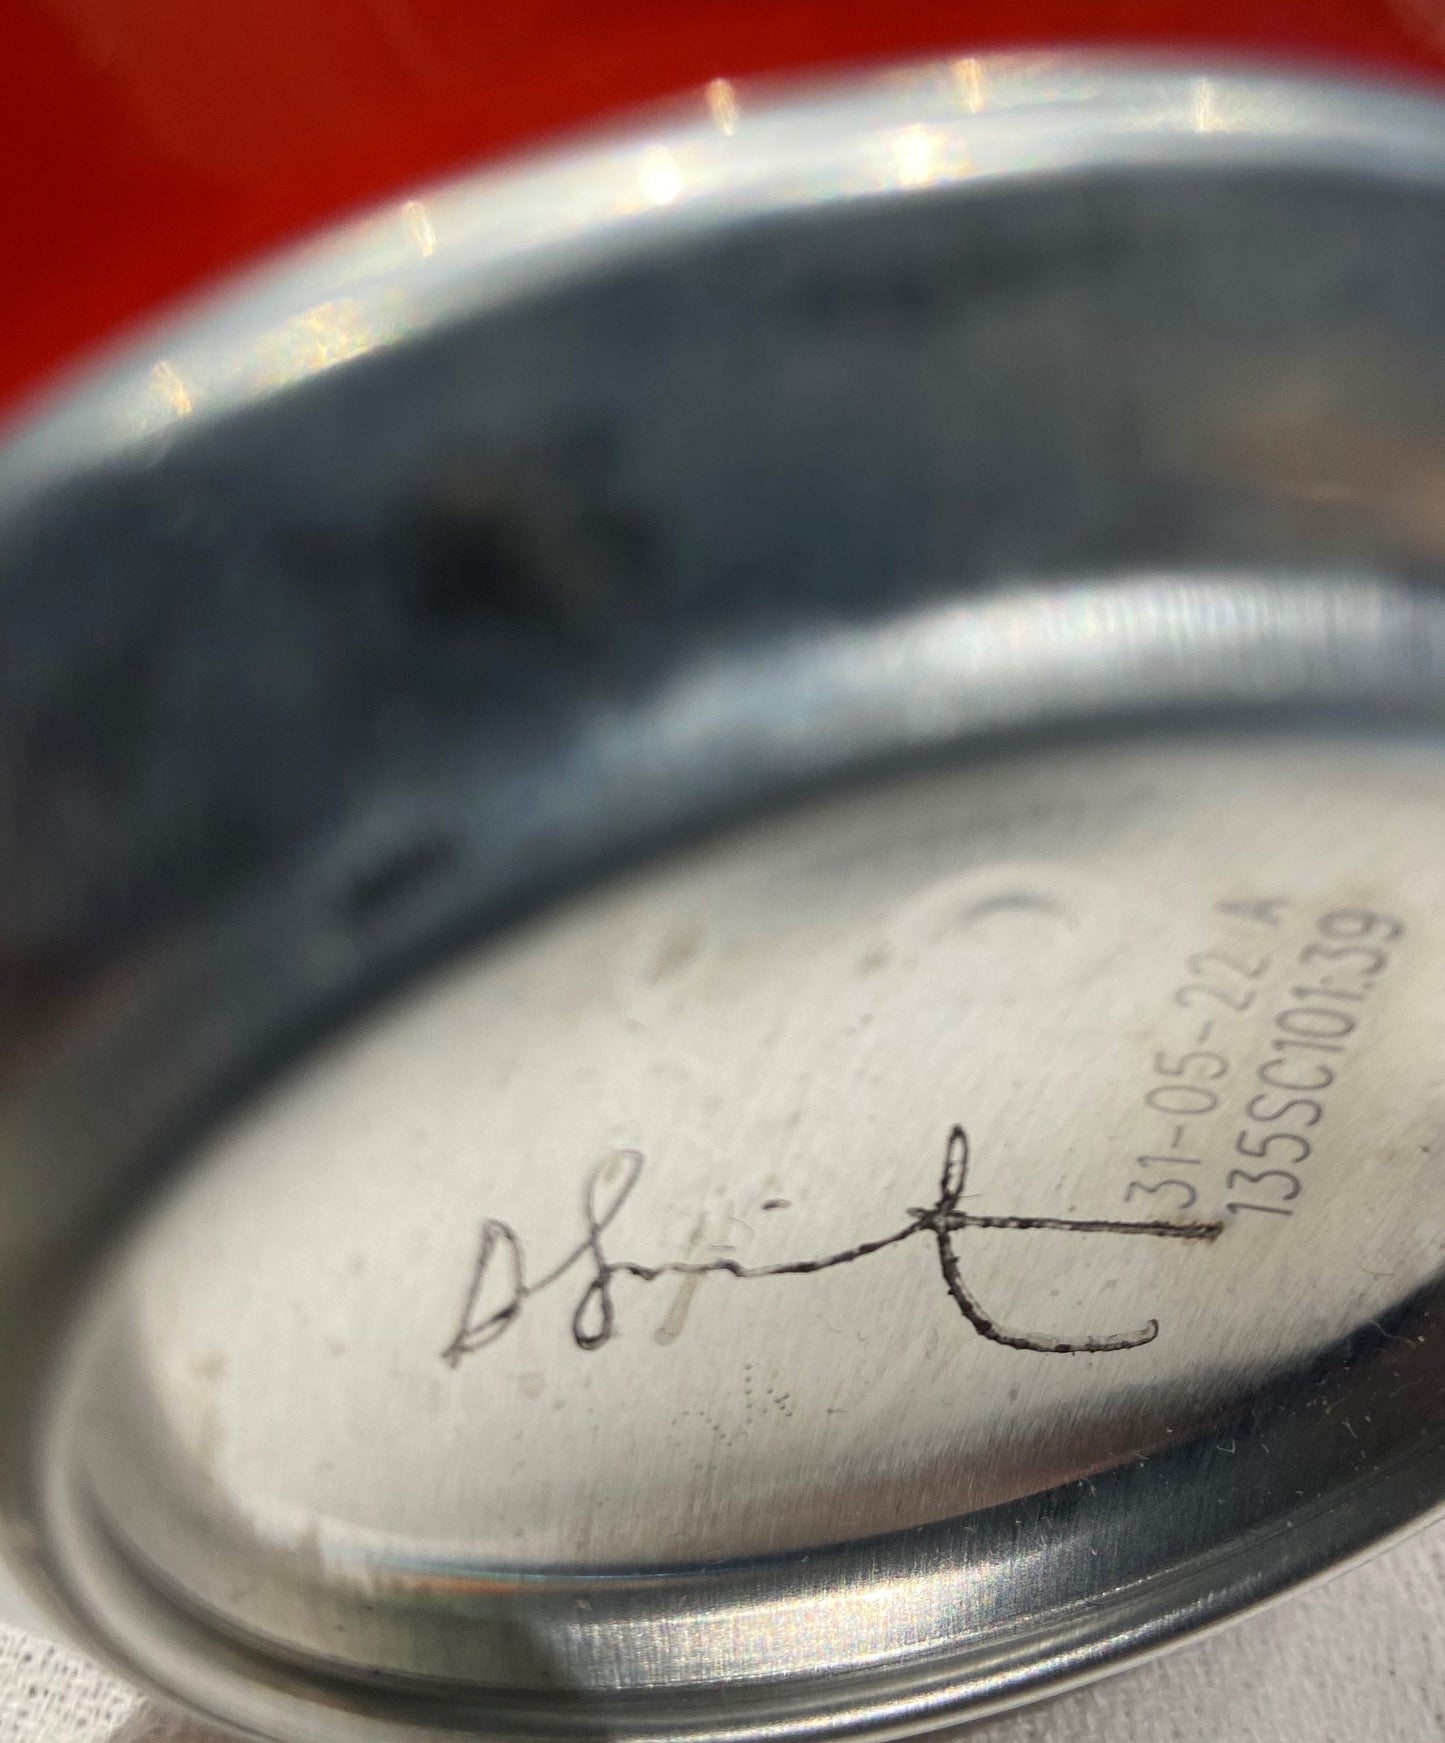 达明·赫斯特 (Damien Hirst) 在高古轩画廊 (Gagosian Gallery) 签名的可口可乐罐